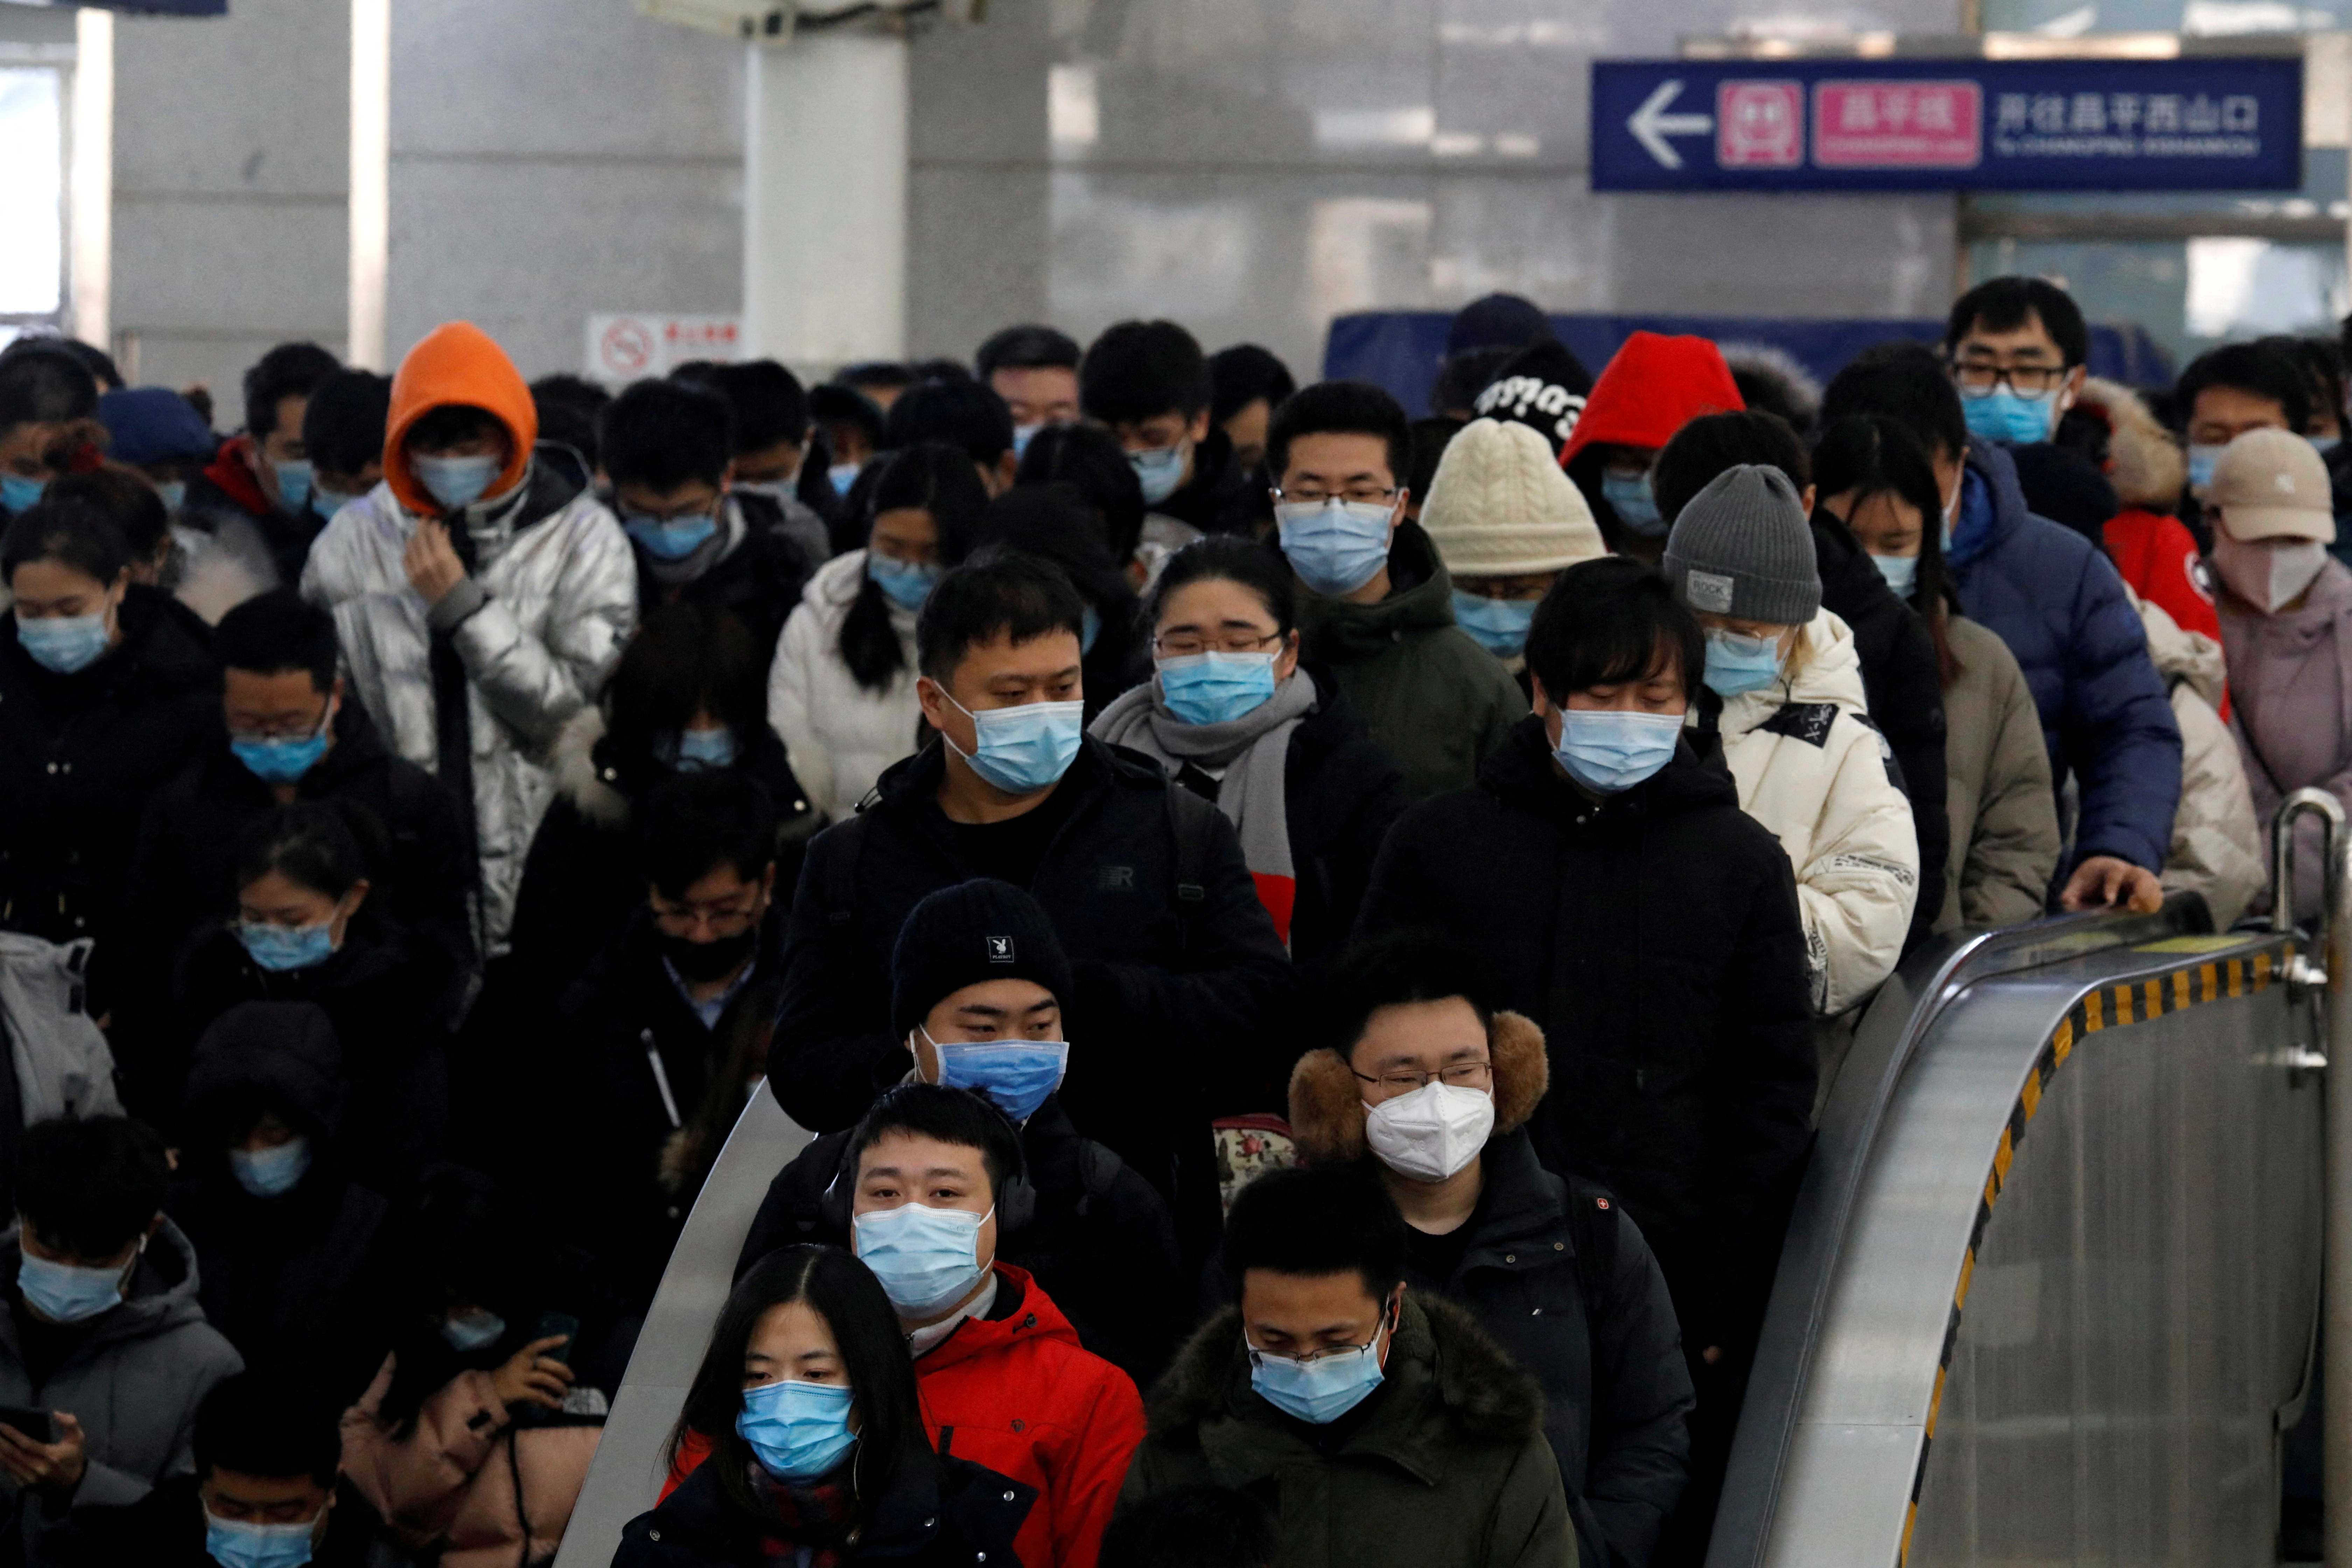 Personas con mascarillas se desplazan en una estación de metro en Beijing, China, el 20 de enero de 2021. REUTERS/Tingshu Wang/Archivo